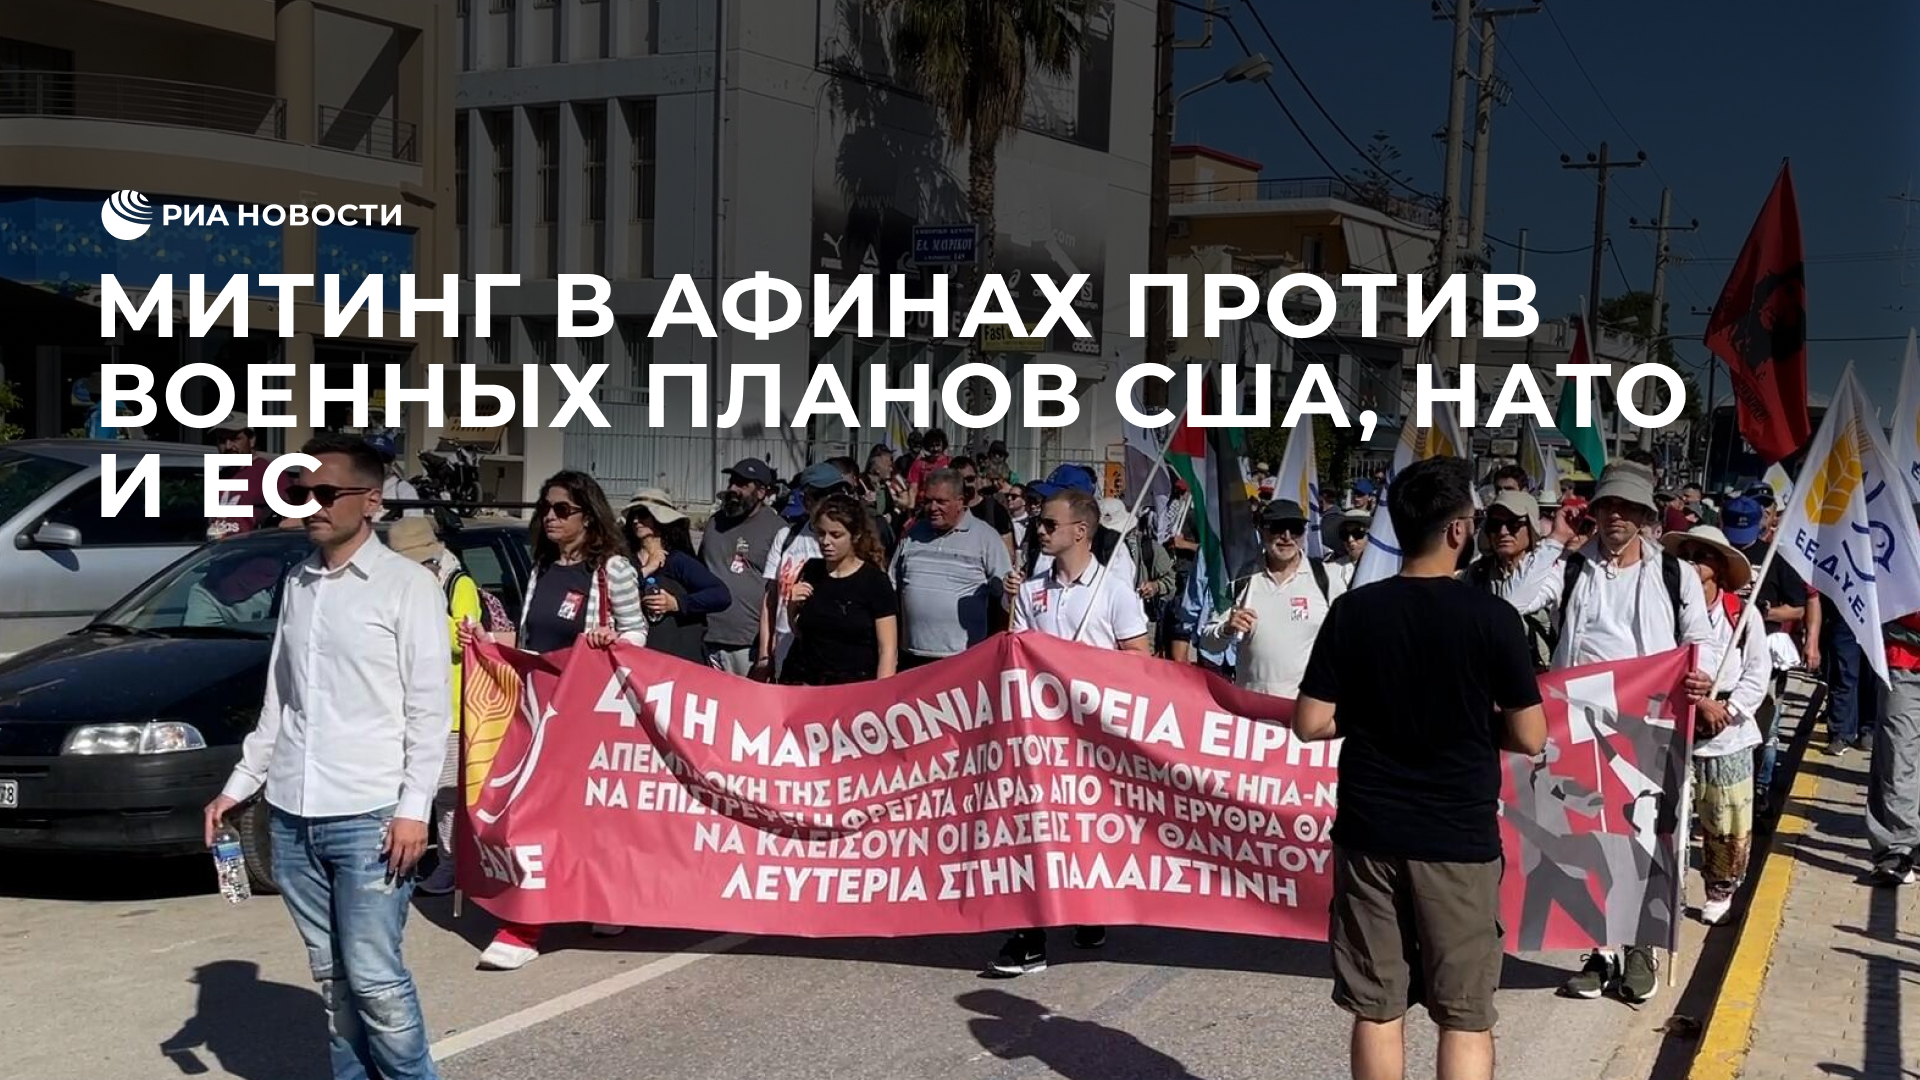 Митинг в Афинах против военных планов США, НАТО и ЕС